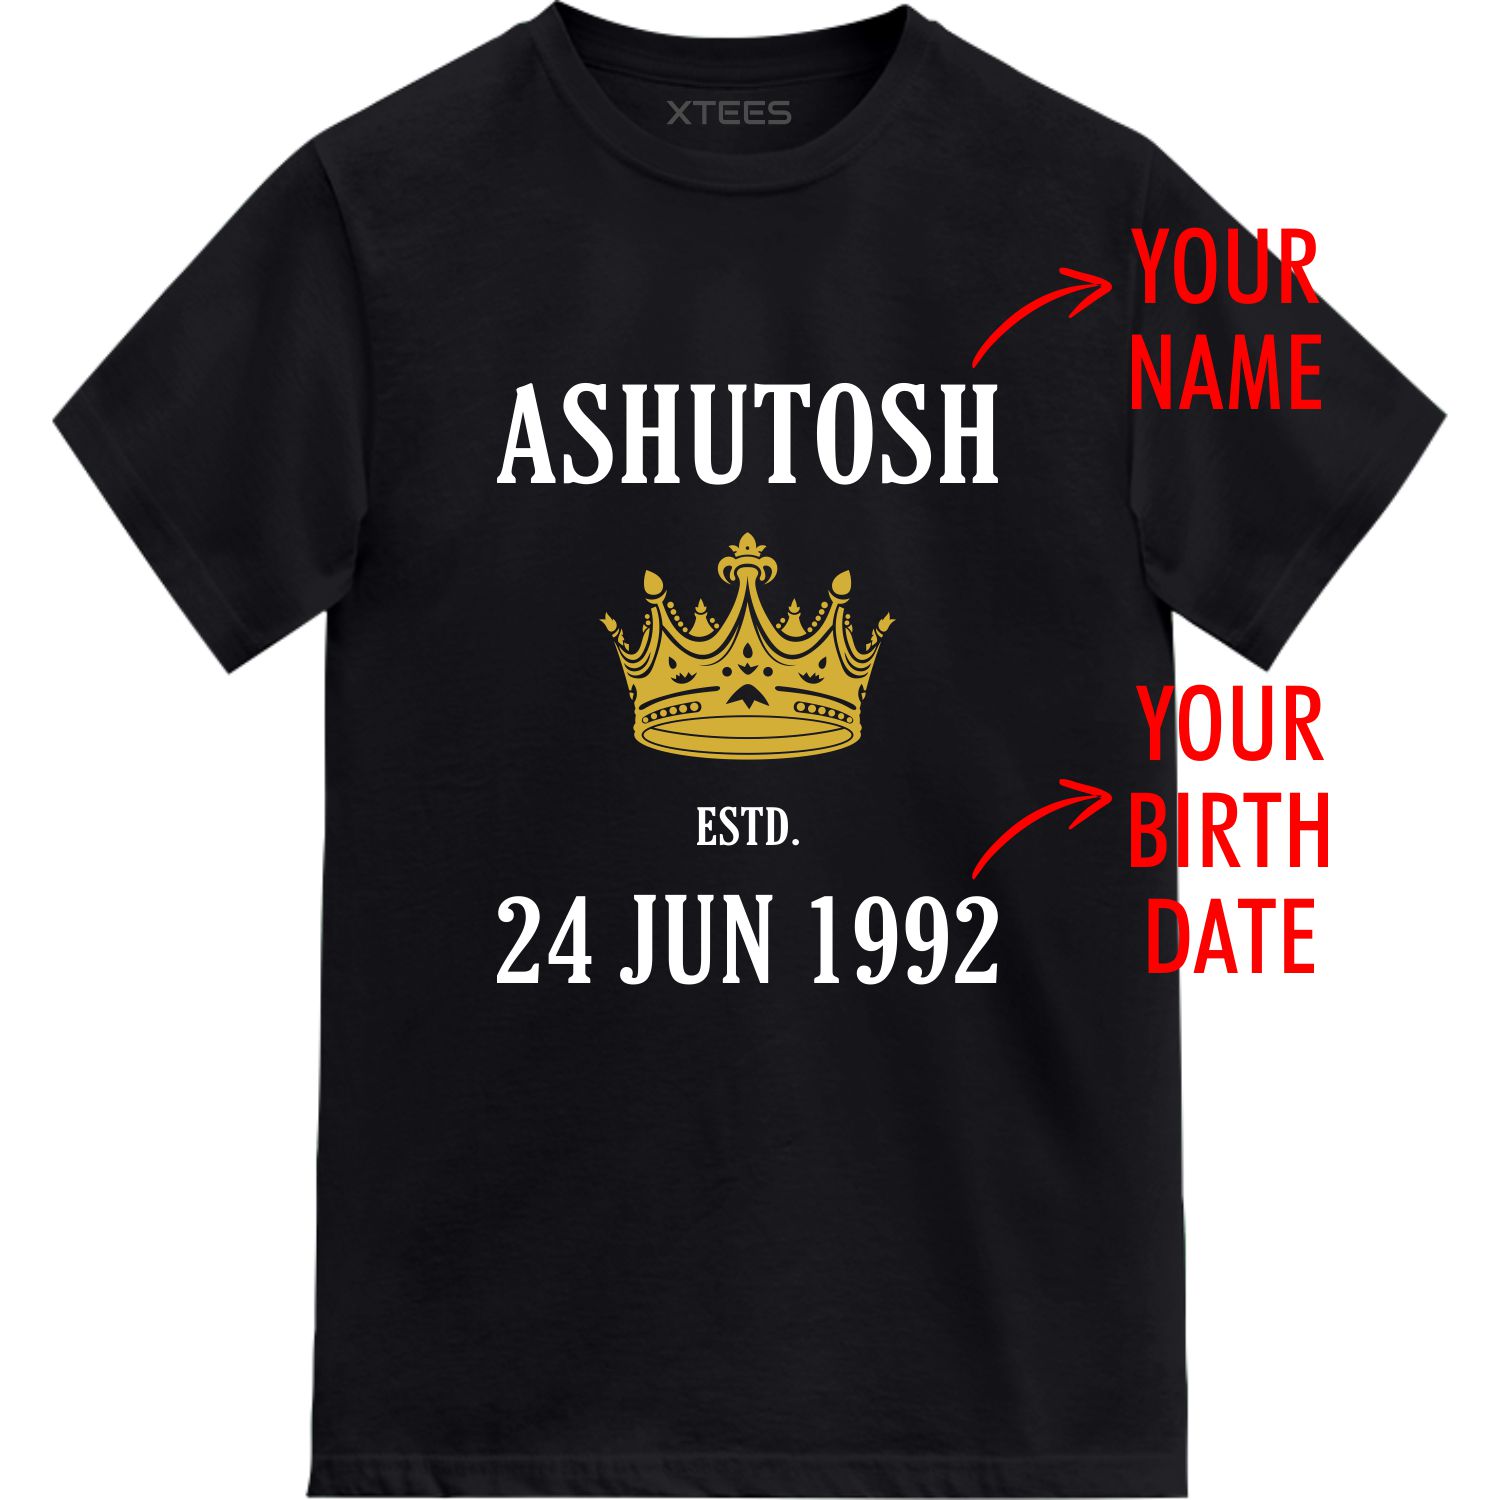 Custom Name Birthday Date Year Printed T-shirt image